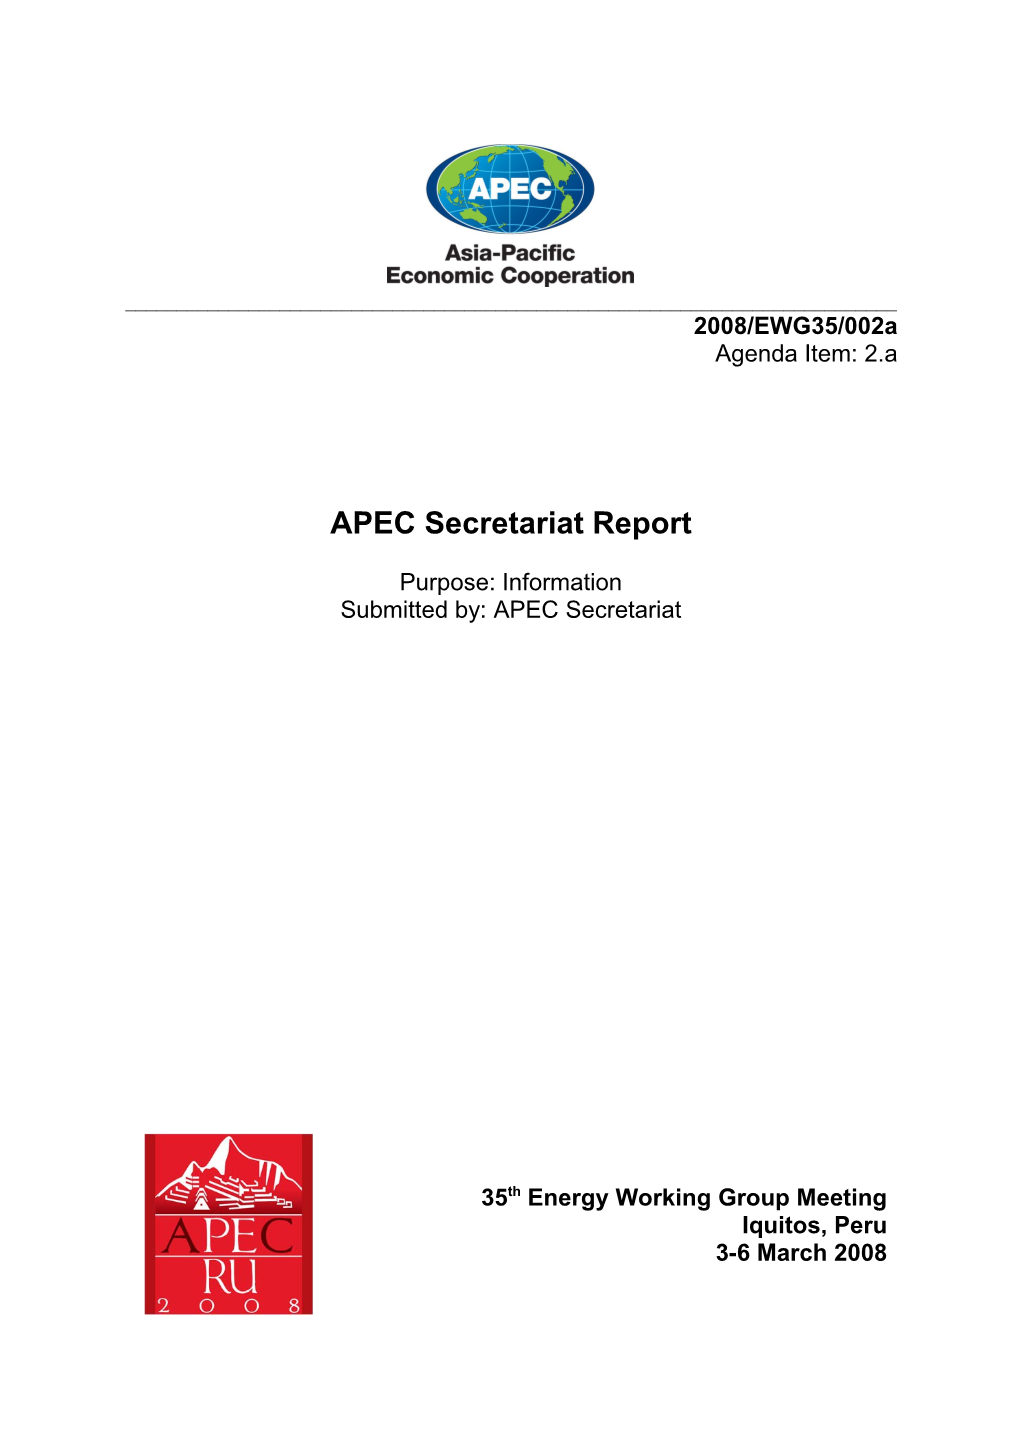 APEC Secretariat Report on APEC Development